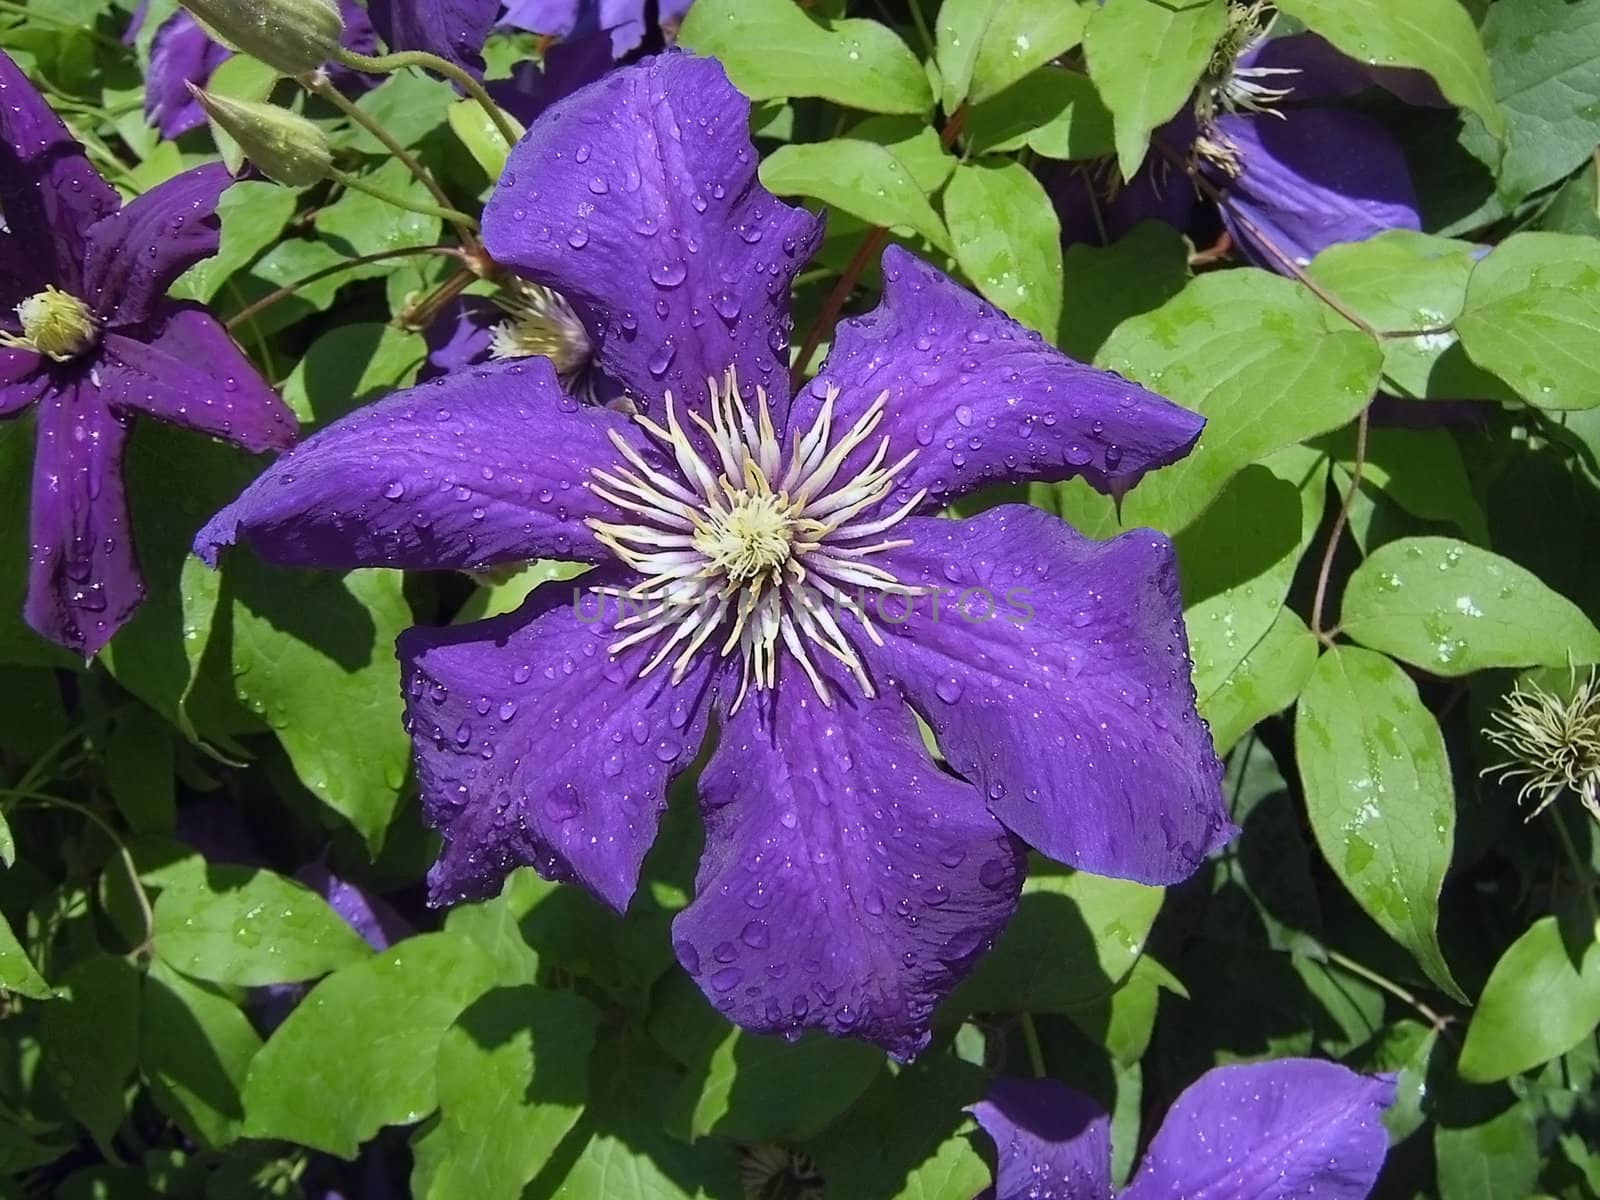 Violet flower, dew, green sheet, water, drop by Viktoha